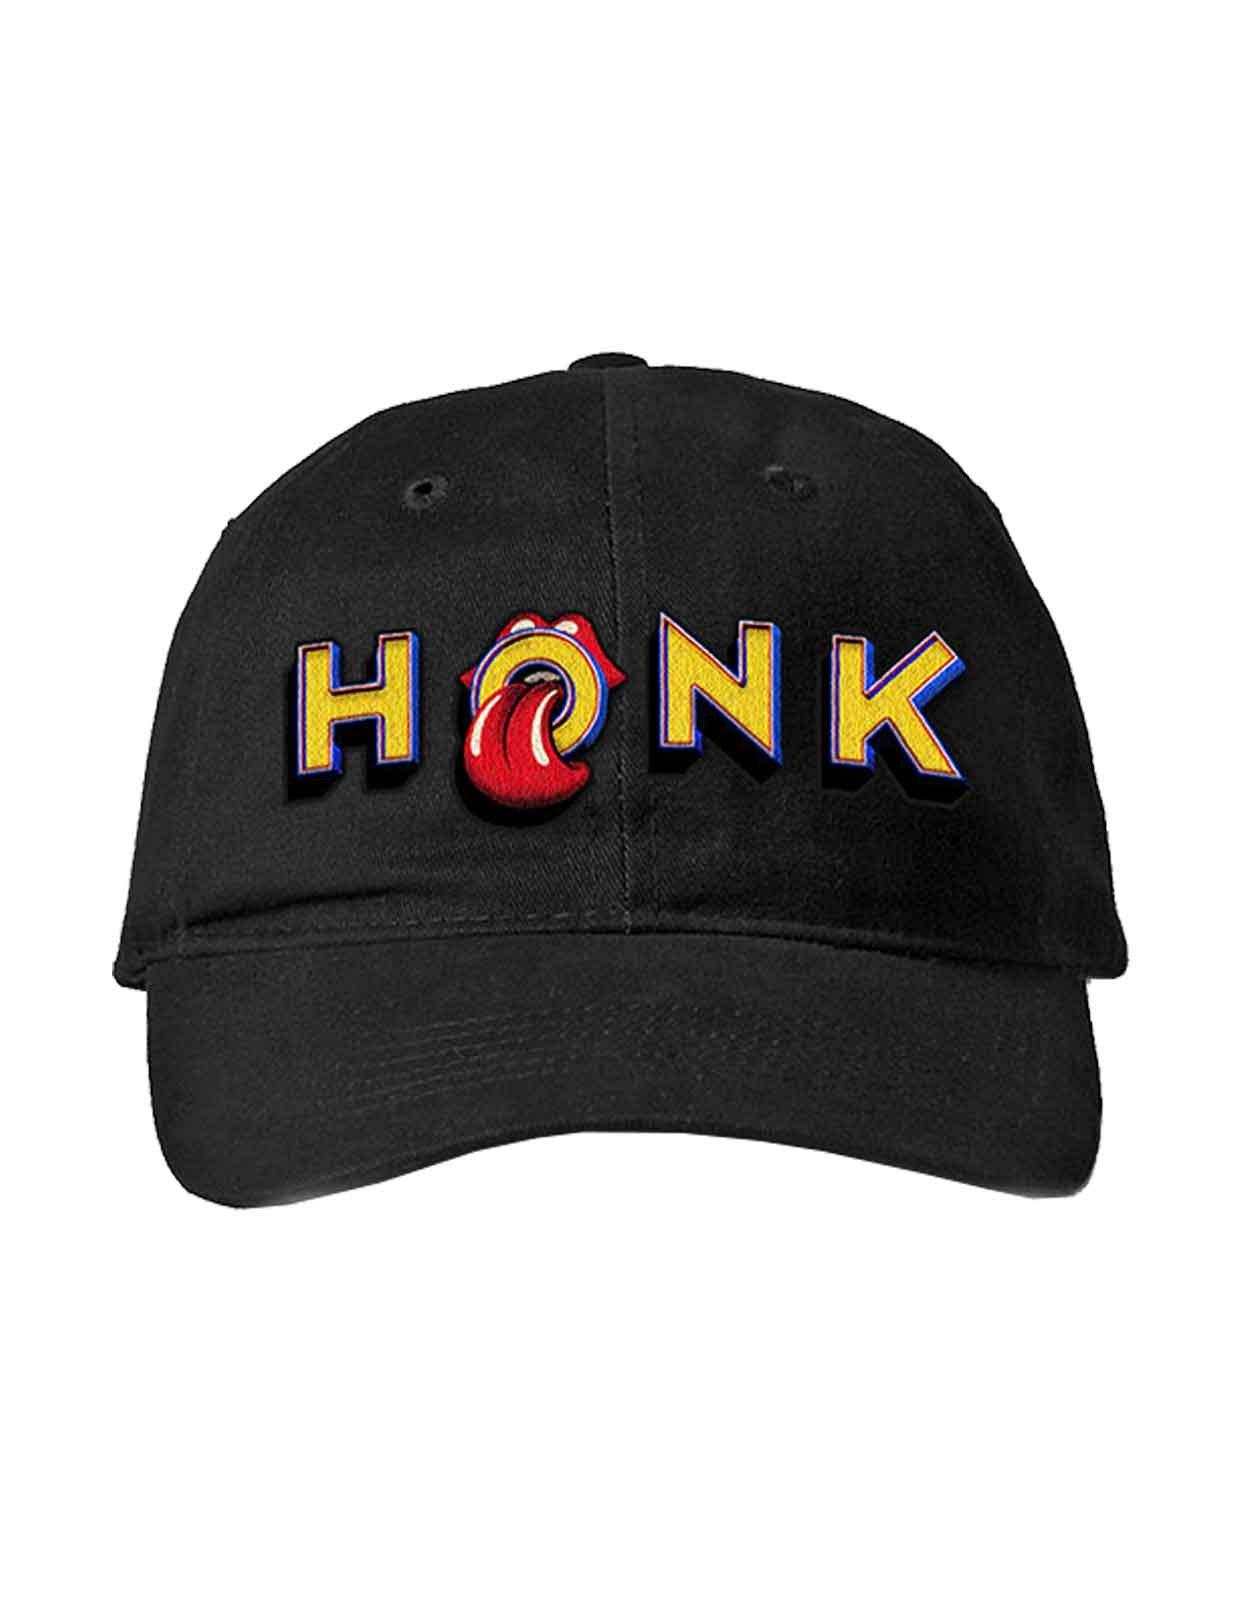 Бейсболка Honk Album с ремешком на спине Rolling Stones, черный market x rolling stones spiked logo